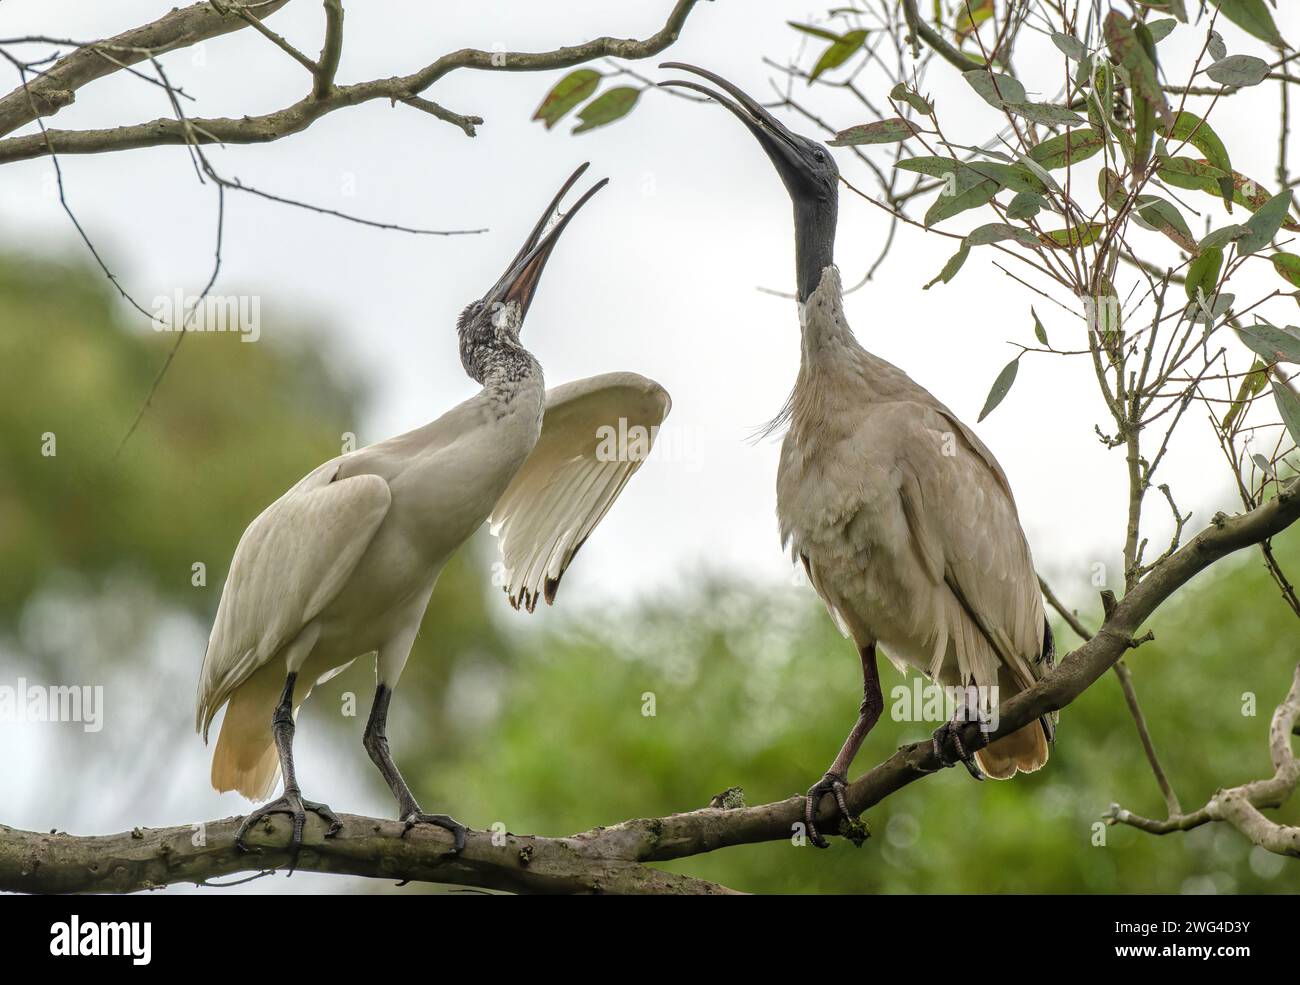 Zwei australische weiße Ibis, Threskiornis molucca, interagieren auf Baumzweigen. Stockfoto